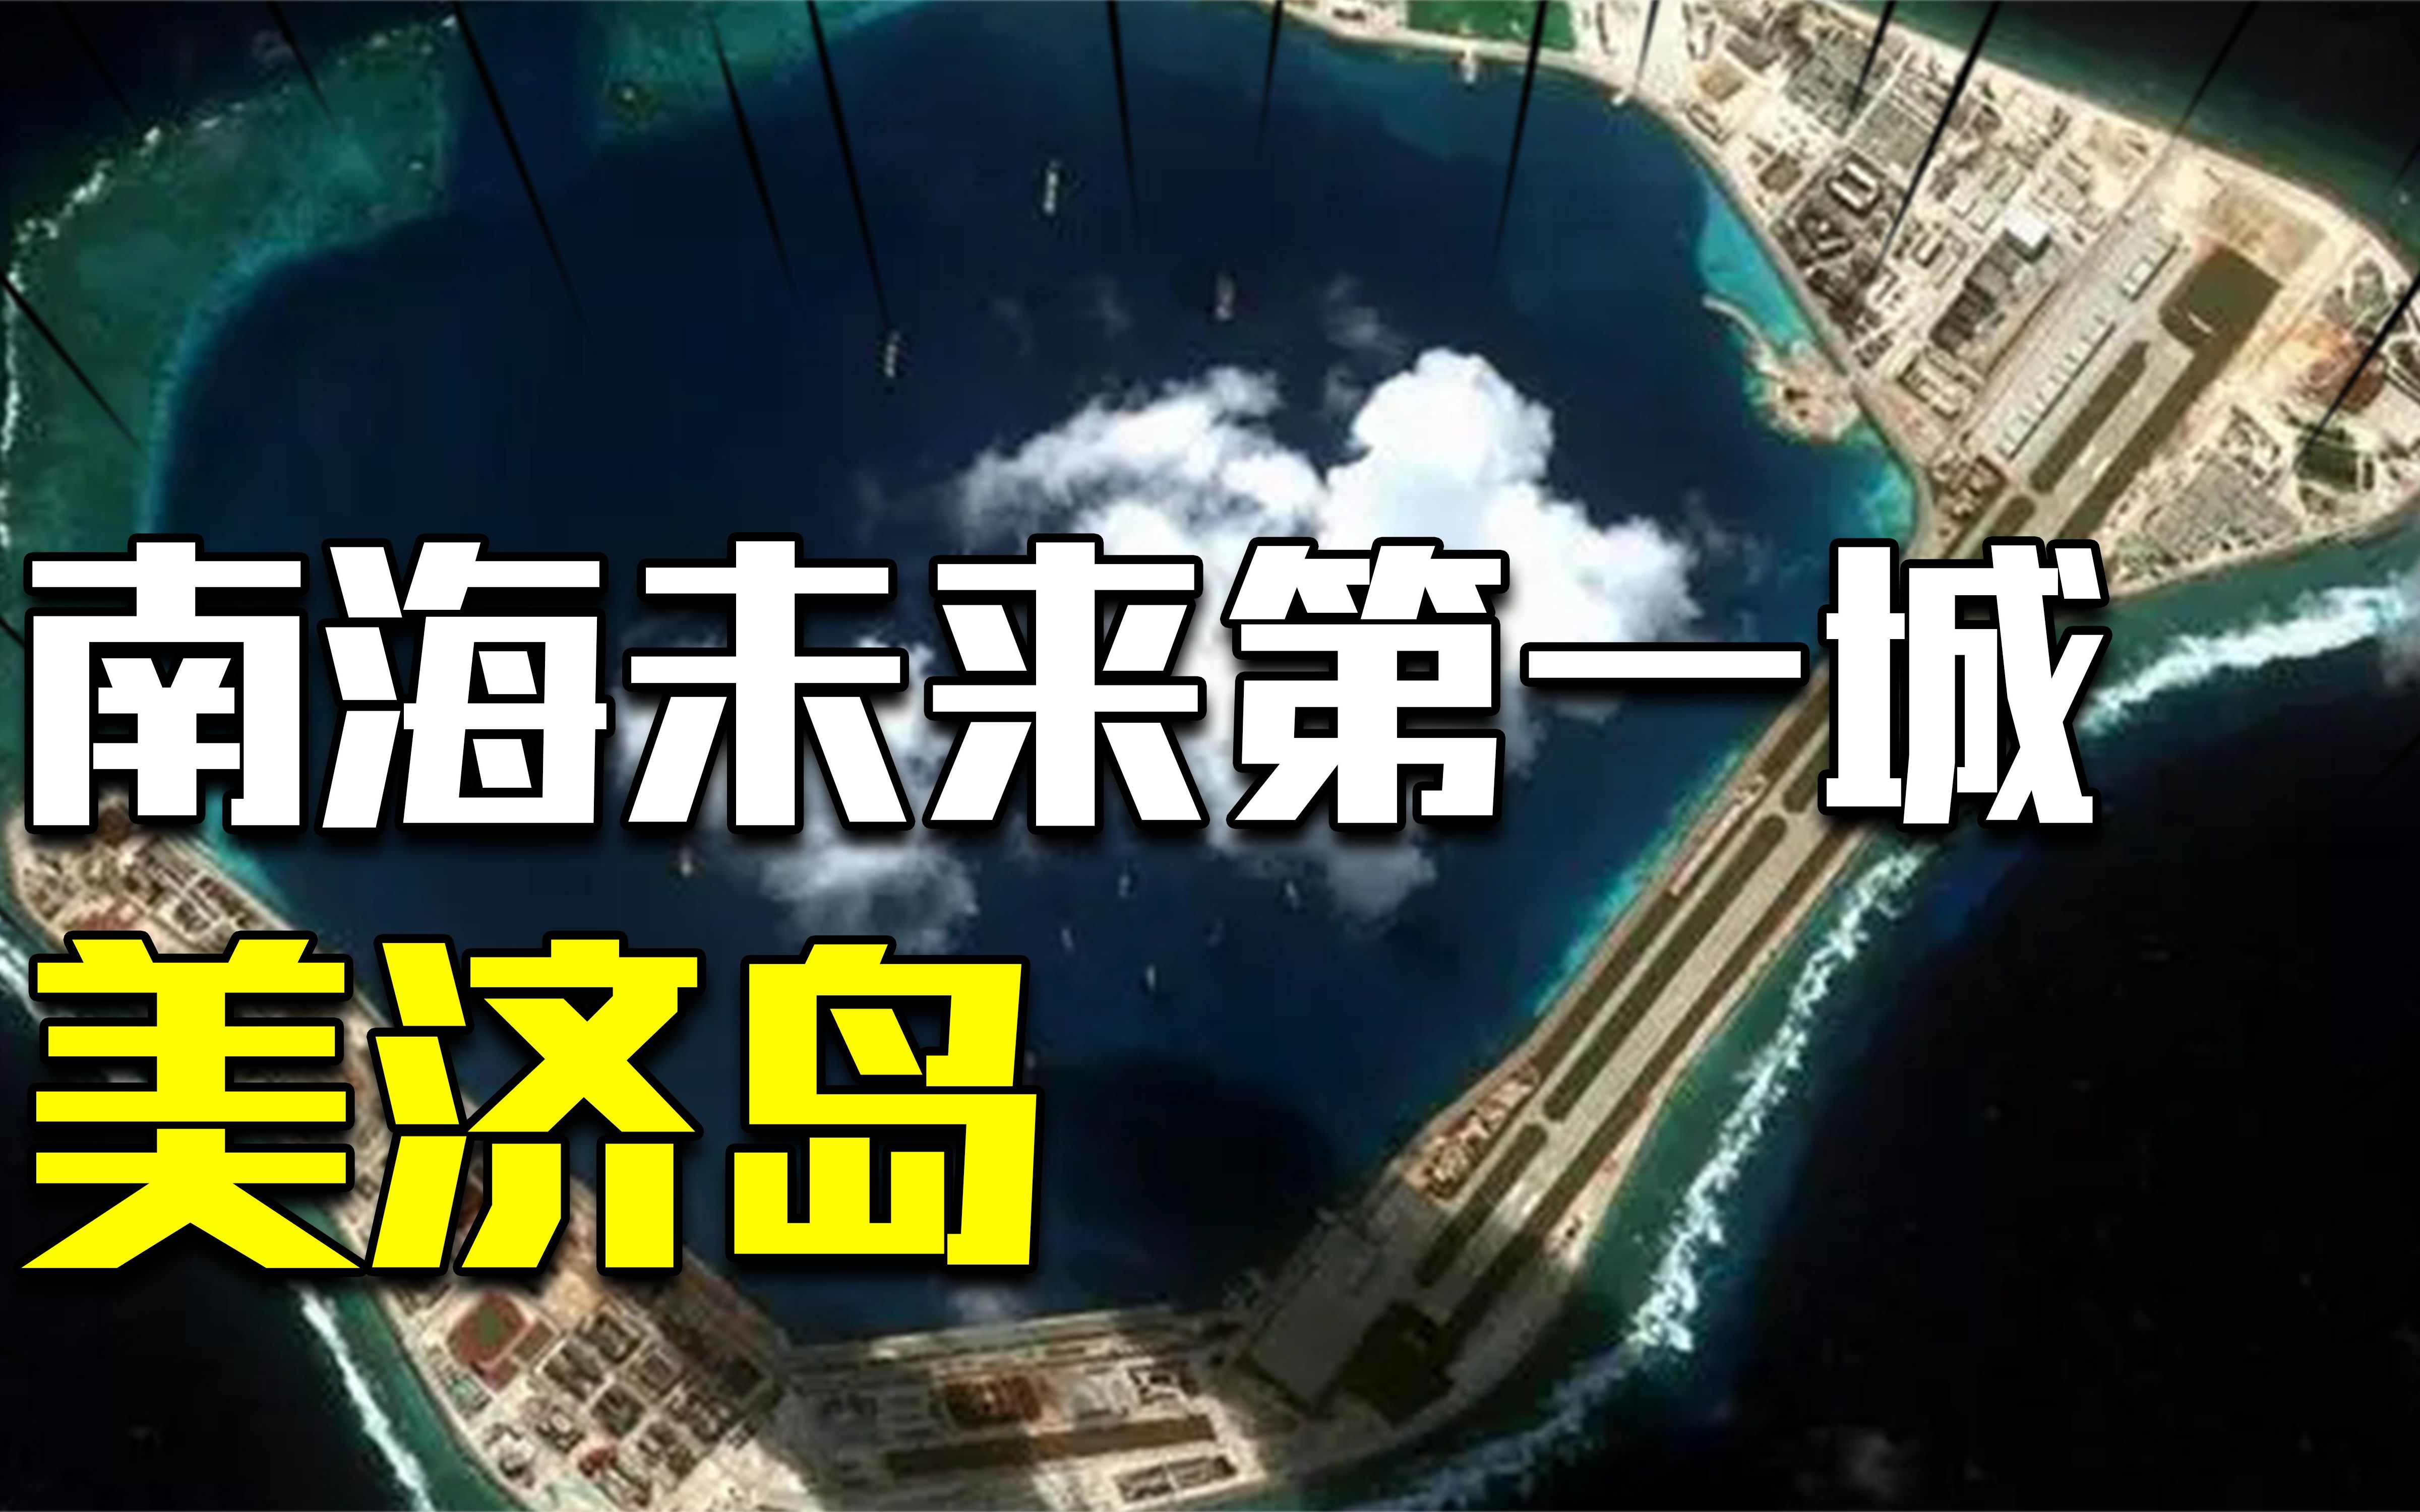 南海未来第一城!中国收复20余年的美济岛,建设现状如何?